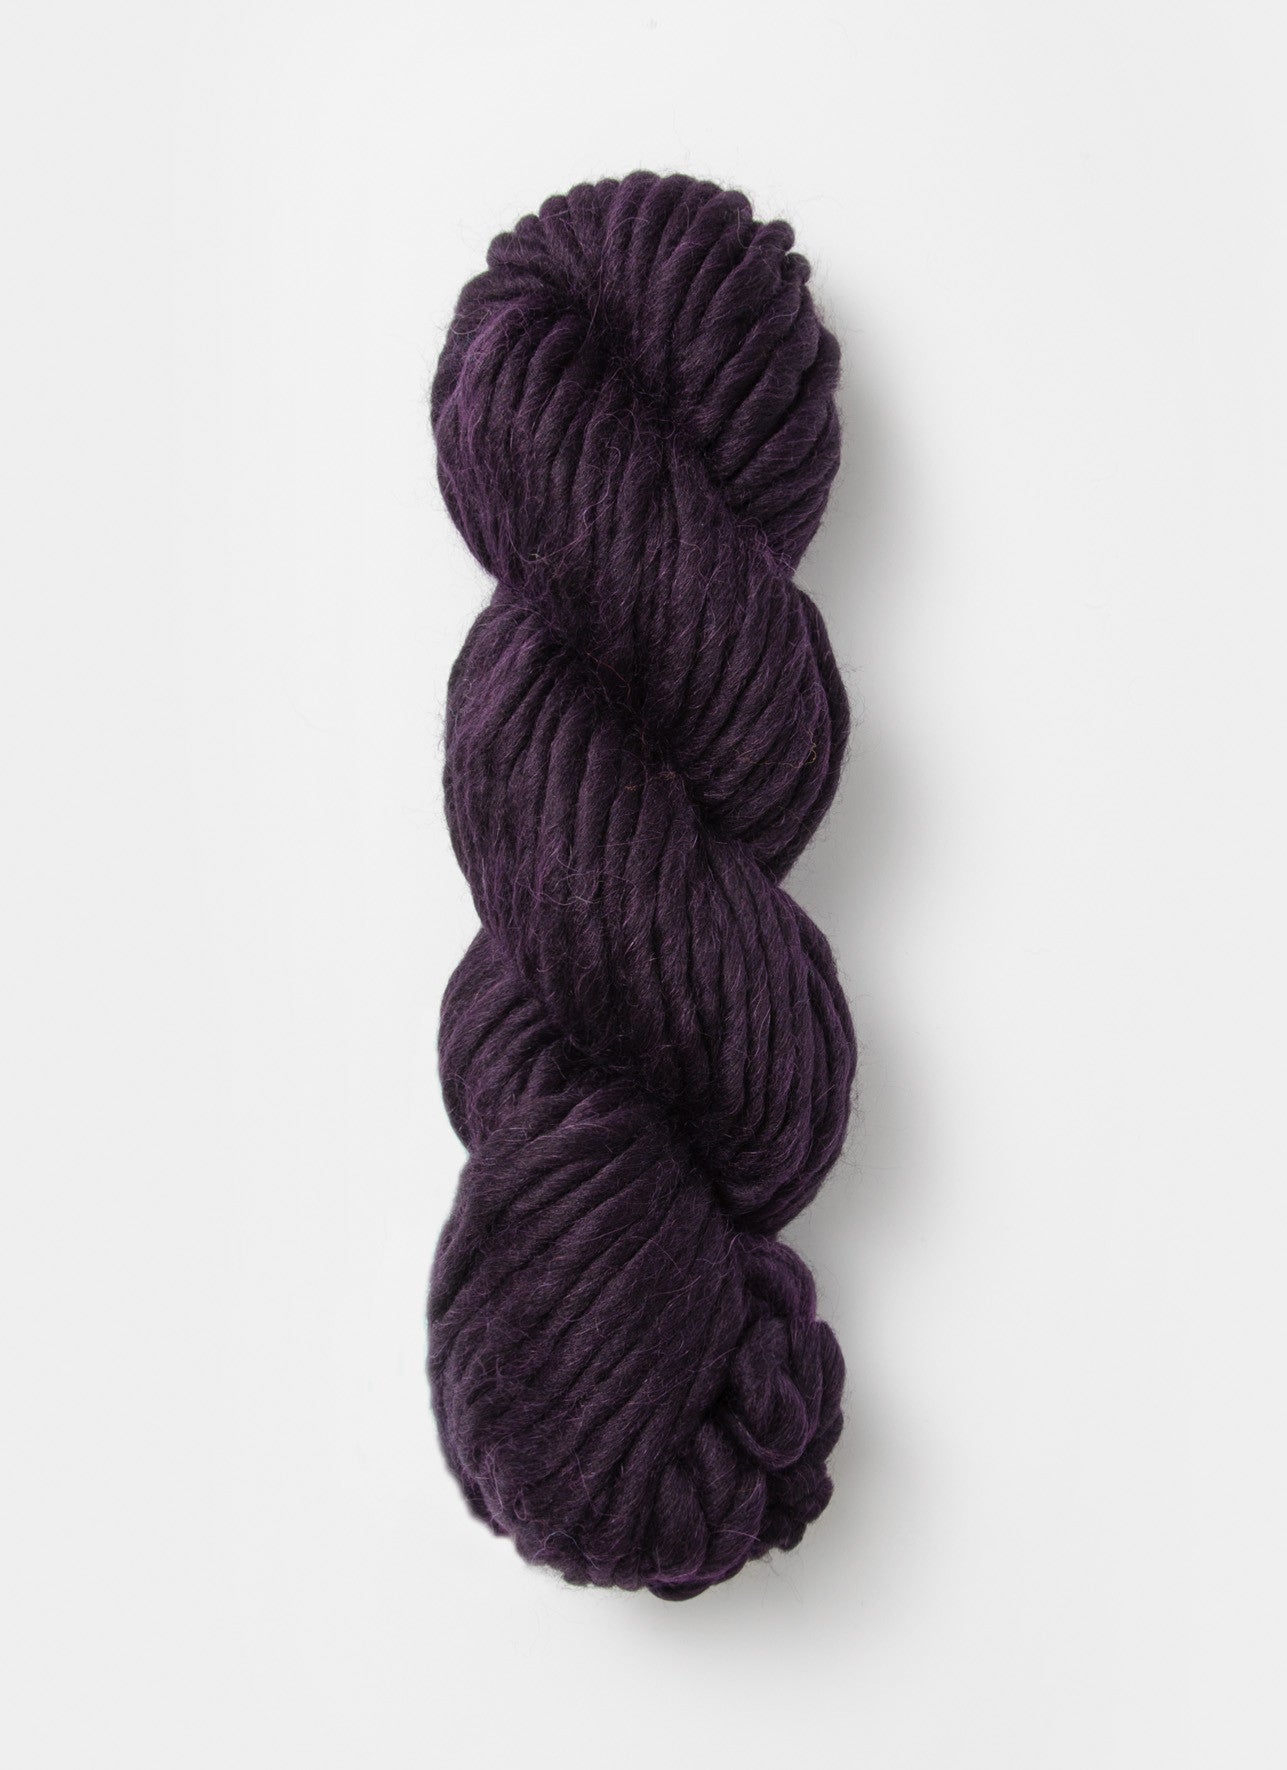 Purple & Blue Sock Weight Alpaca Yarn For Sale